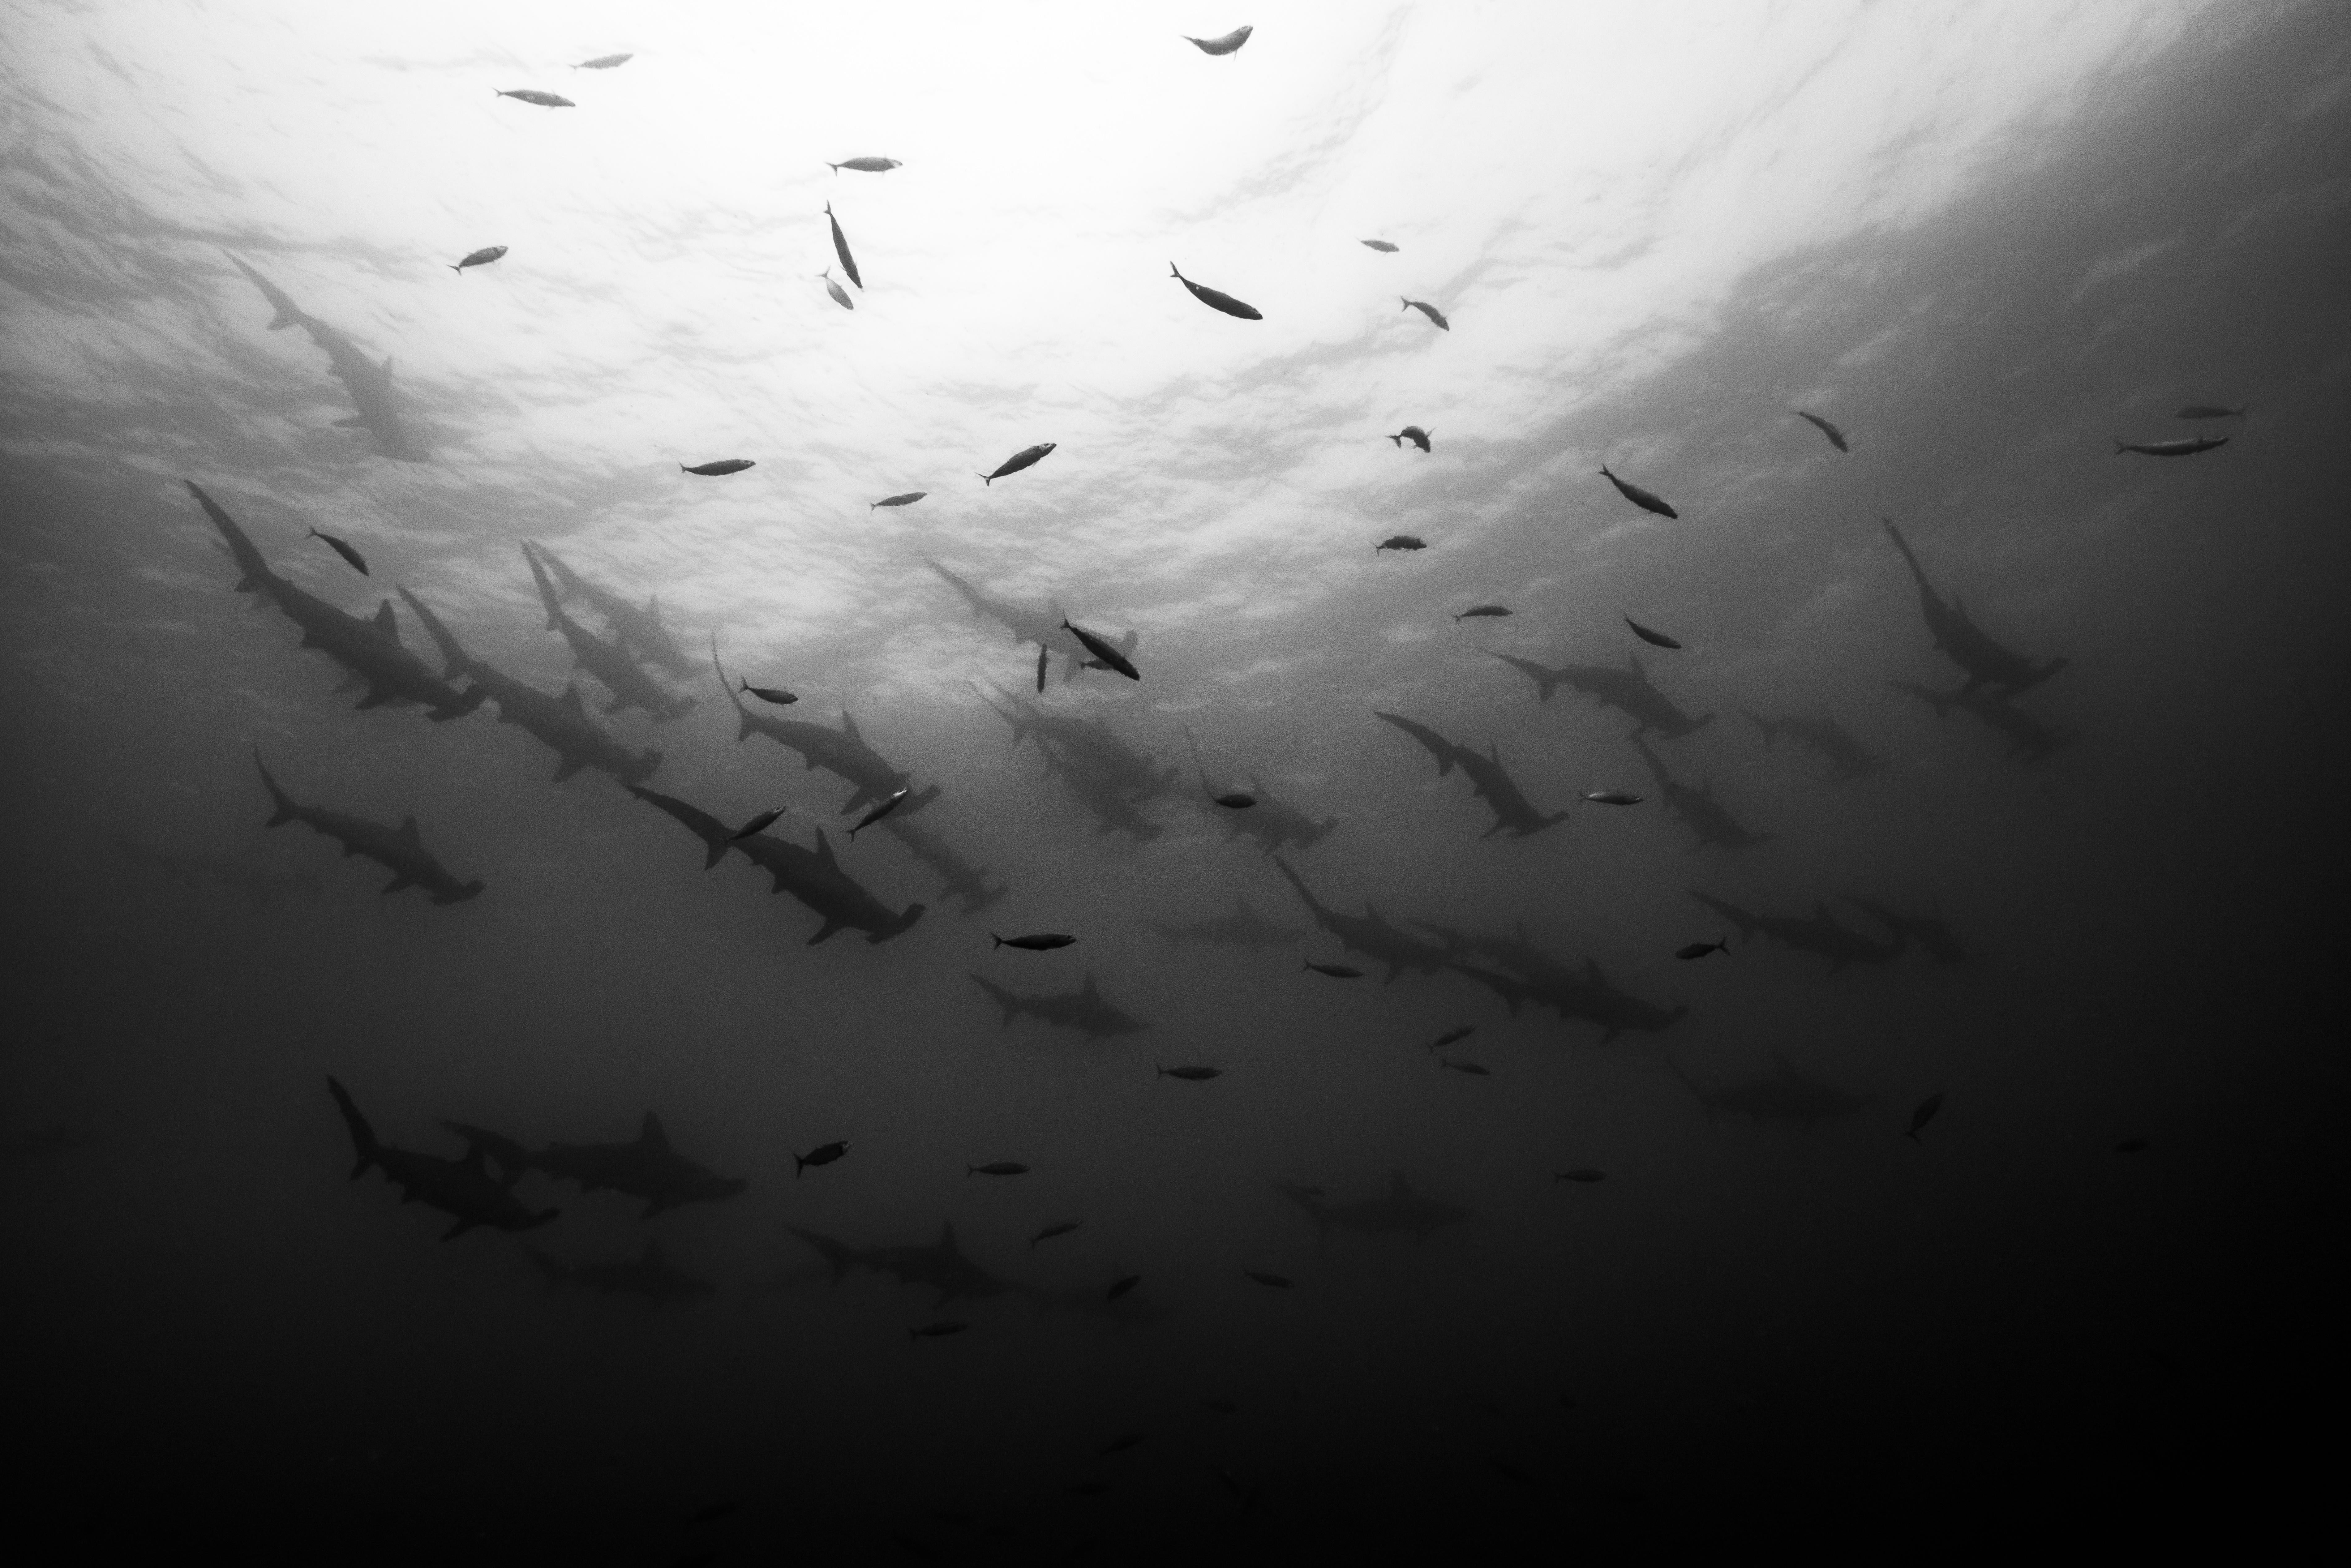 Cristina Mittermeier Black and White Photograph - Shark Squadron